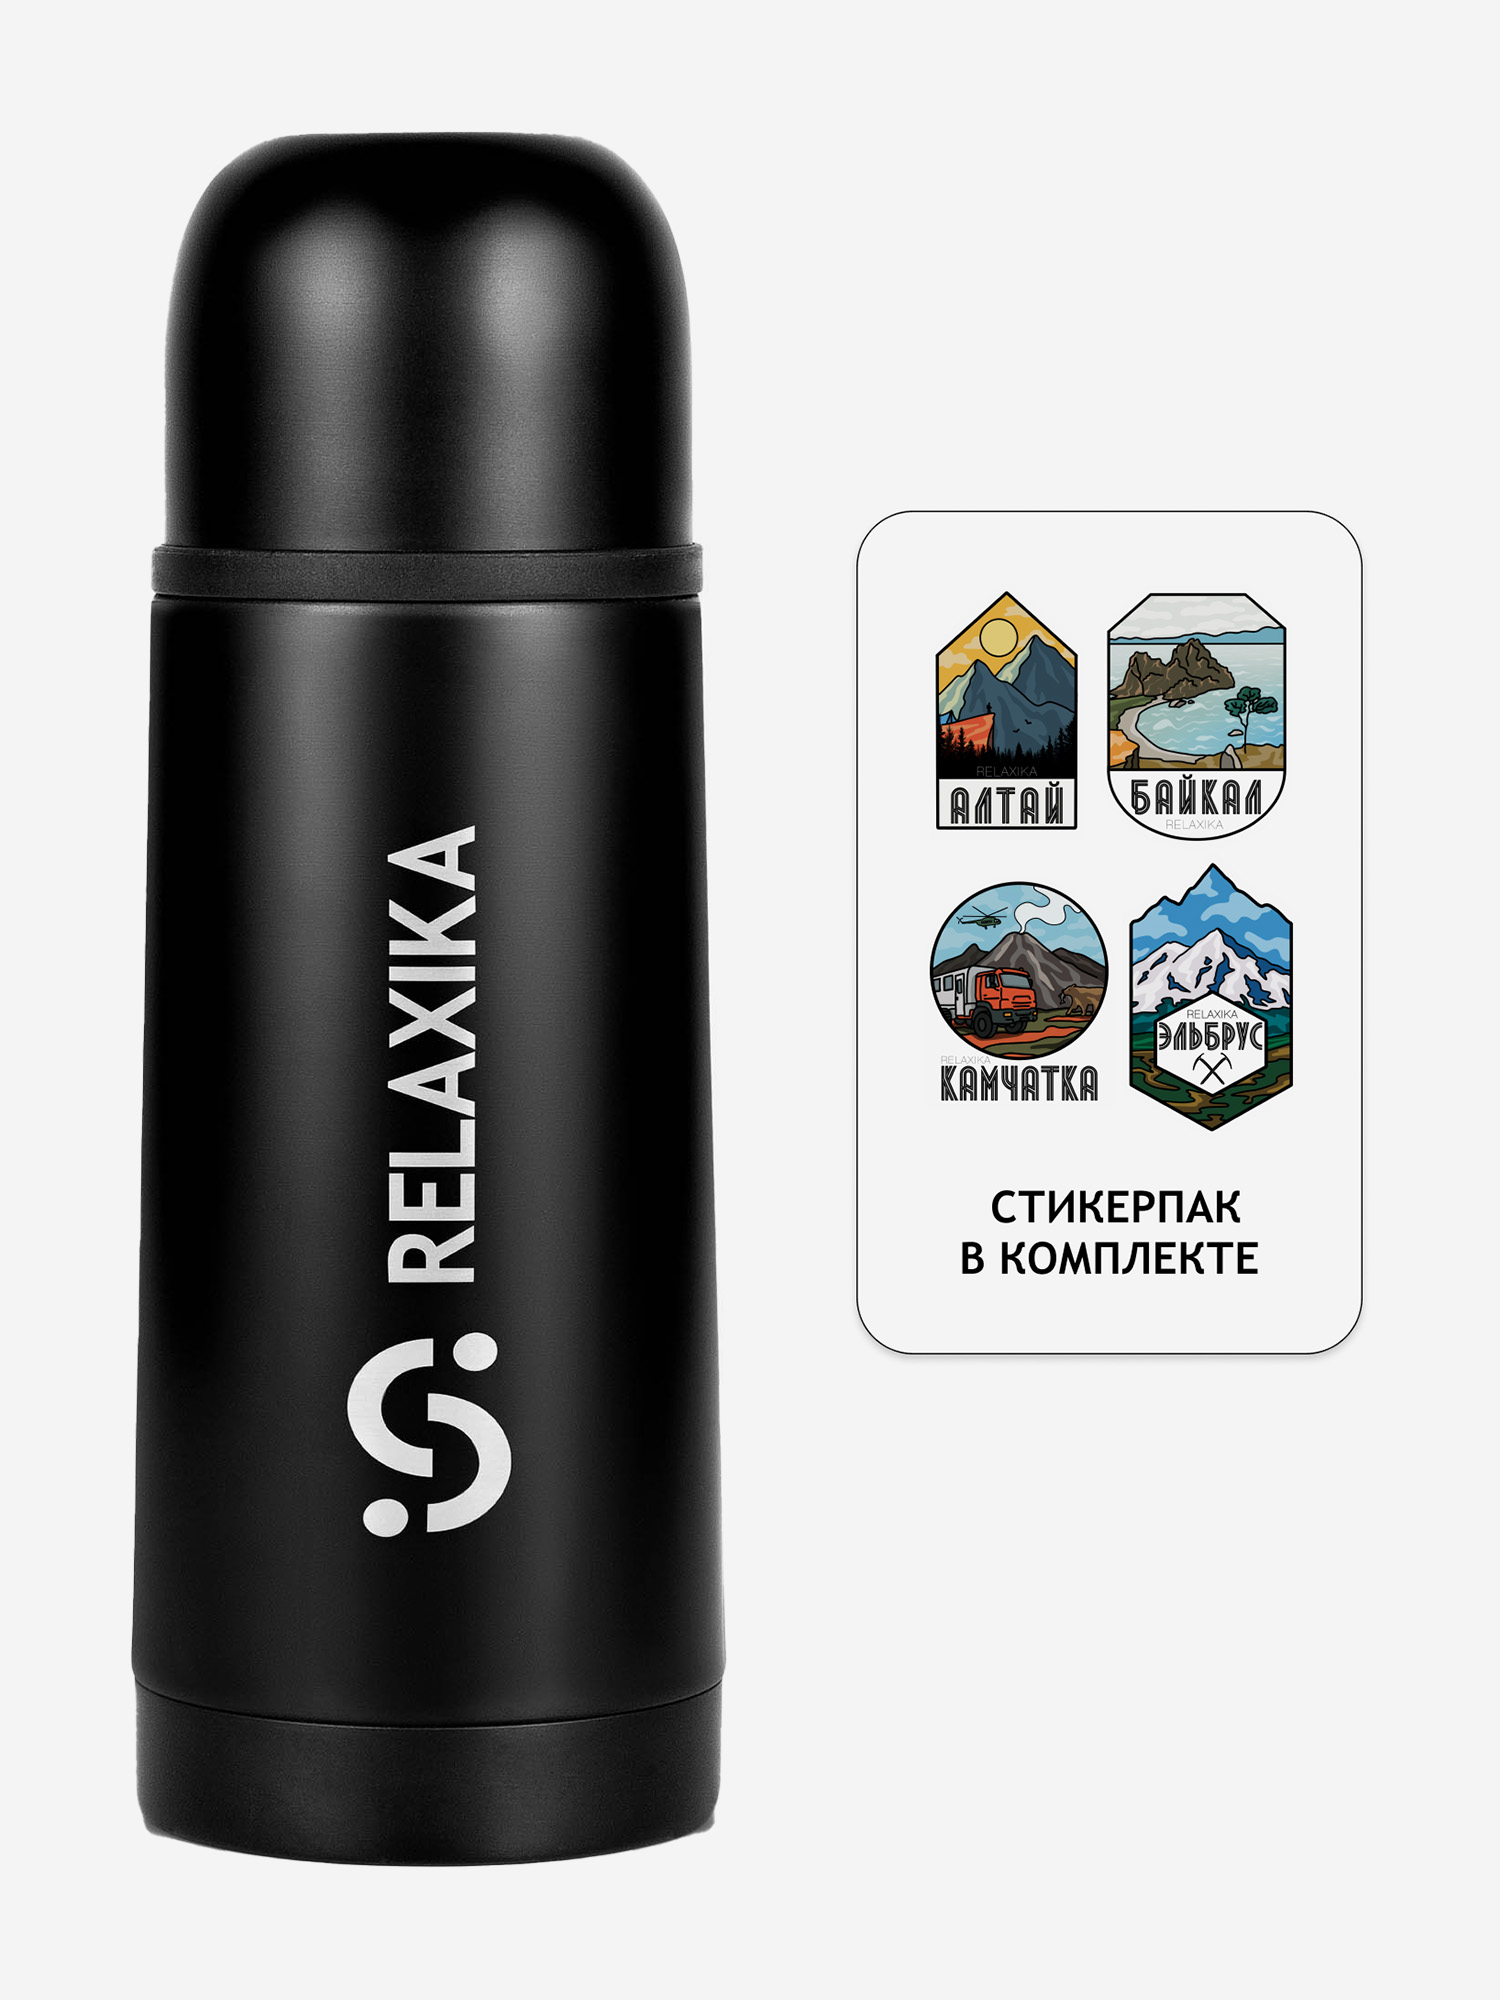 Термос для напитков Relaxika 101, 350 мл, черный, в подарок стикерпак Красоты России, Черный термос relaxika 101 r101 750 1 0 75 л стальной